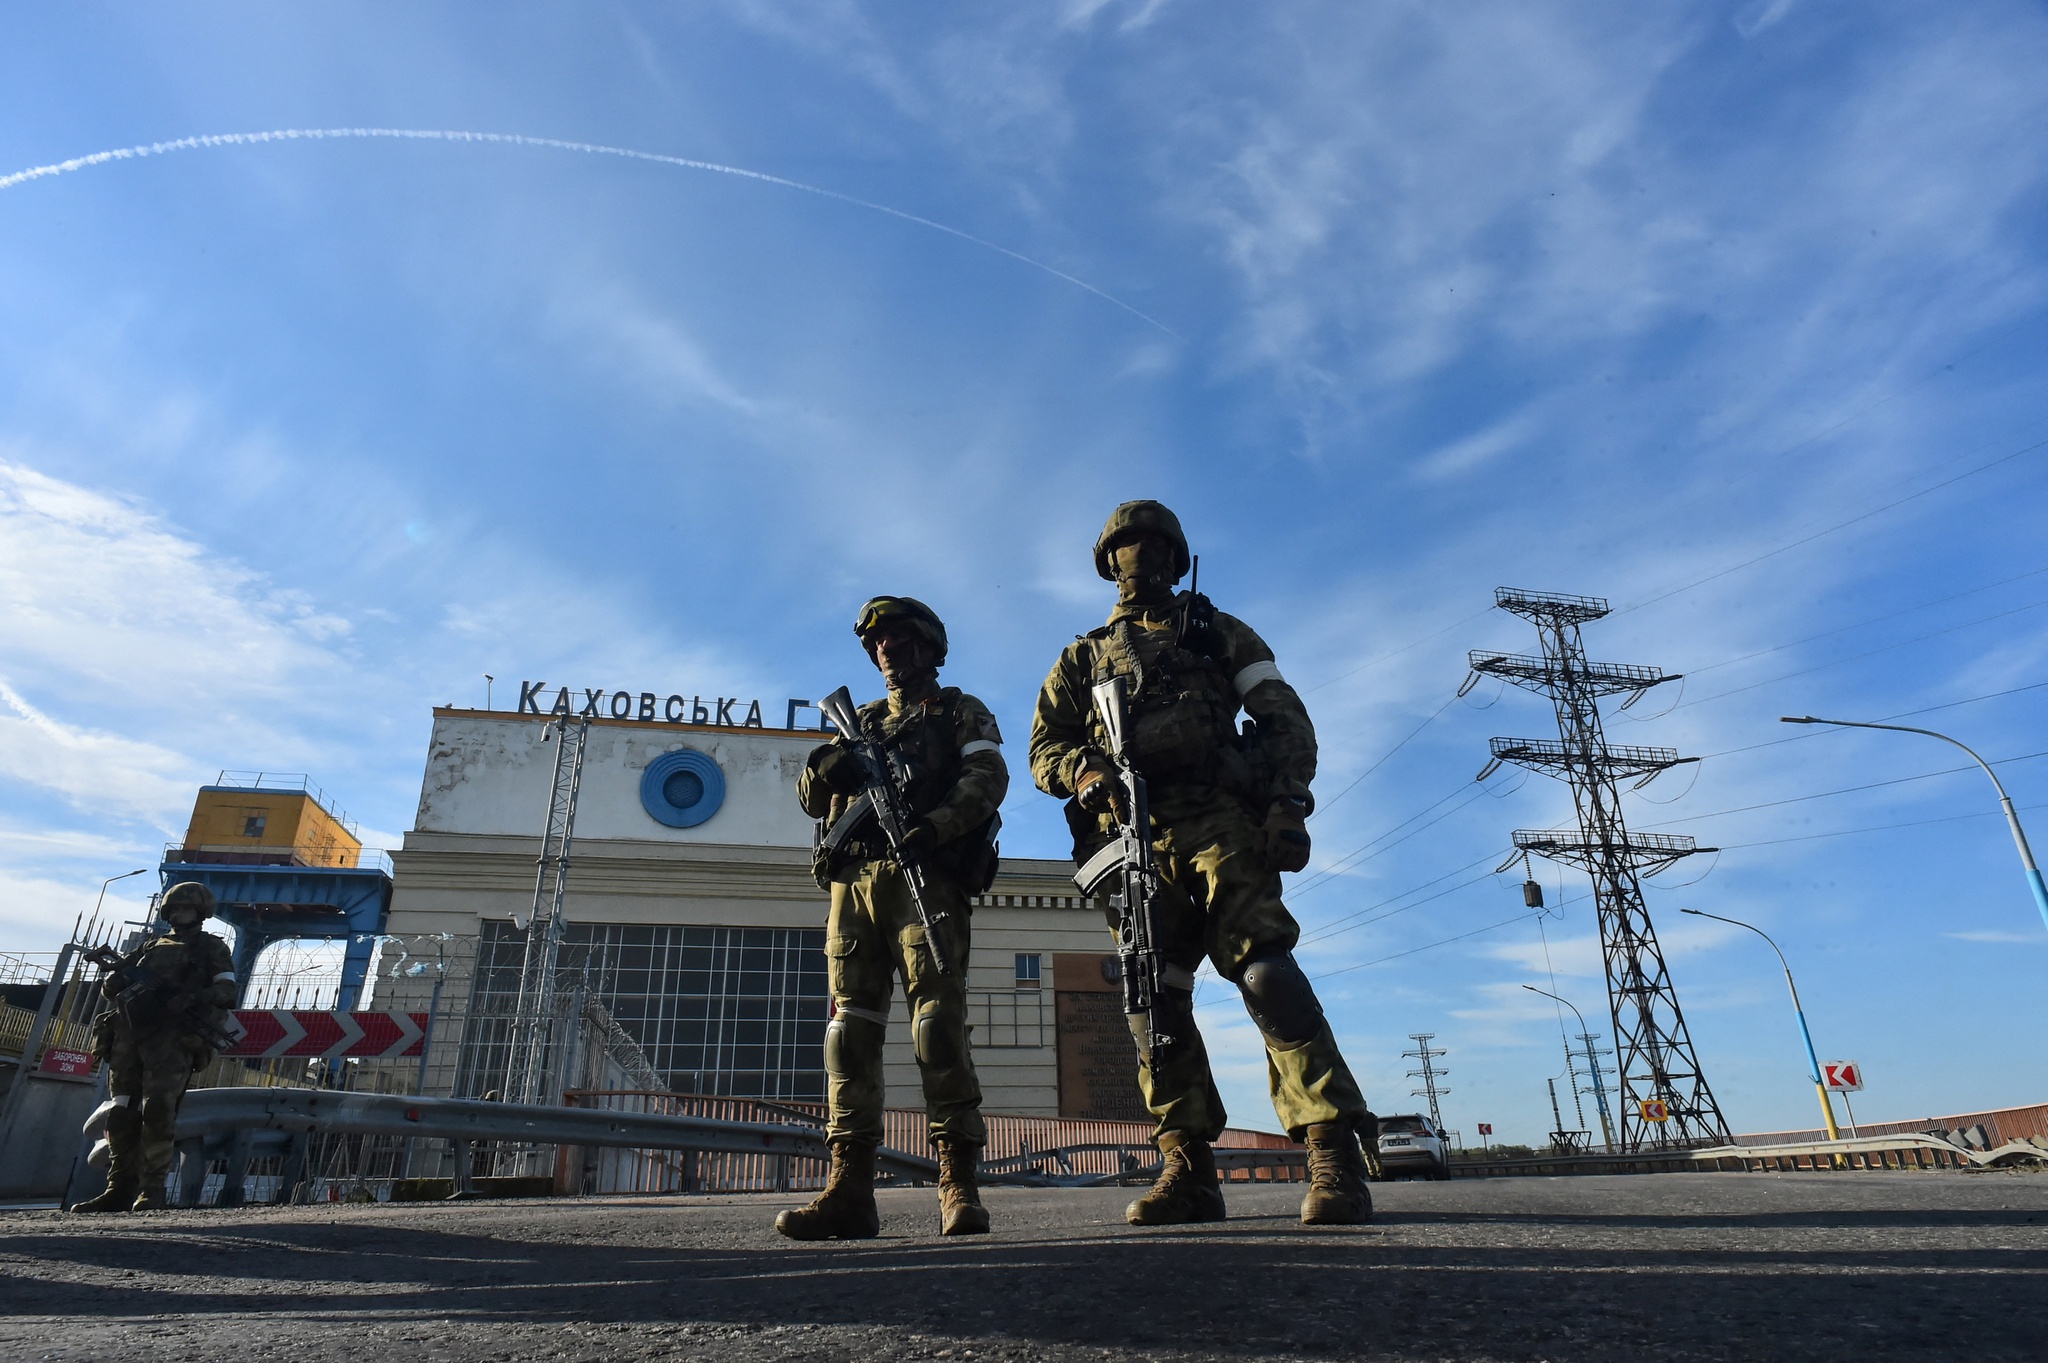 Chính quyền thân Moscow ở Kherson đề nghị Nga lập căn cứ, tổng thống Ukraine cảnh báo - ảnh 1